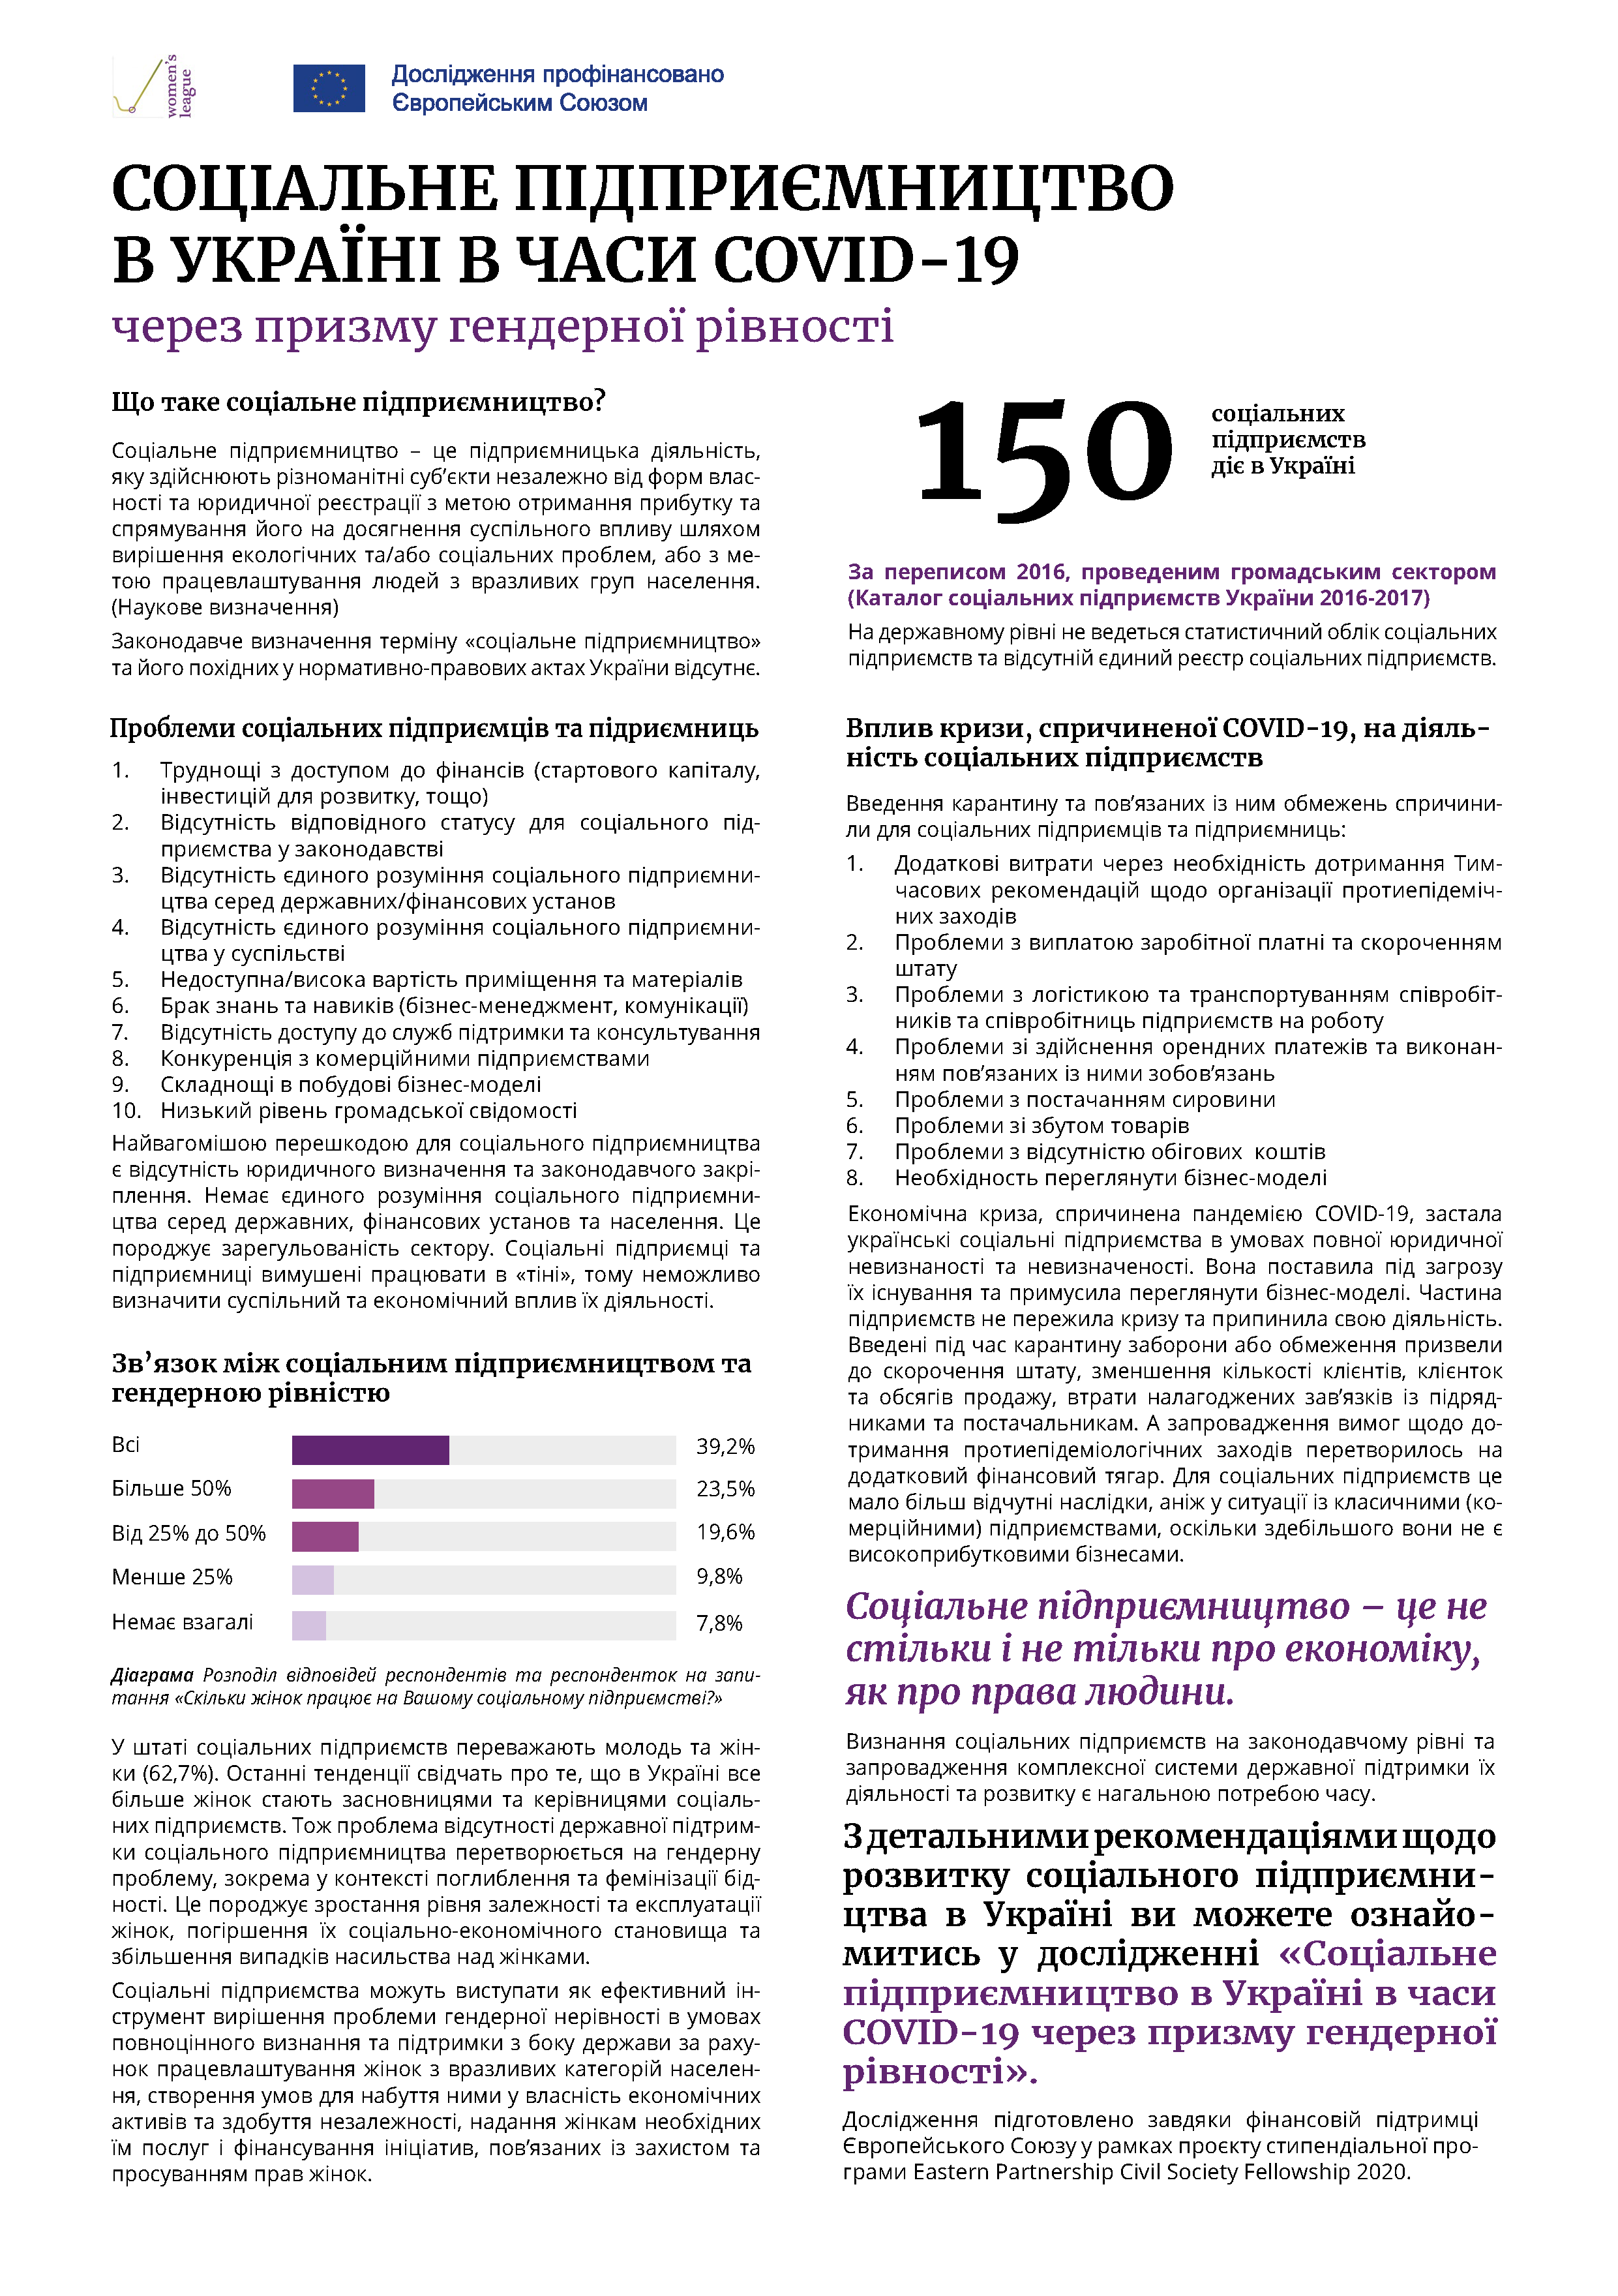 Соціальне підприємництво в Україні в часи COVID-19 через призму гендерної рівності: інфографіка